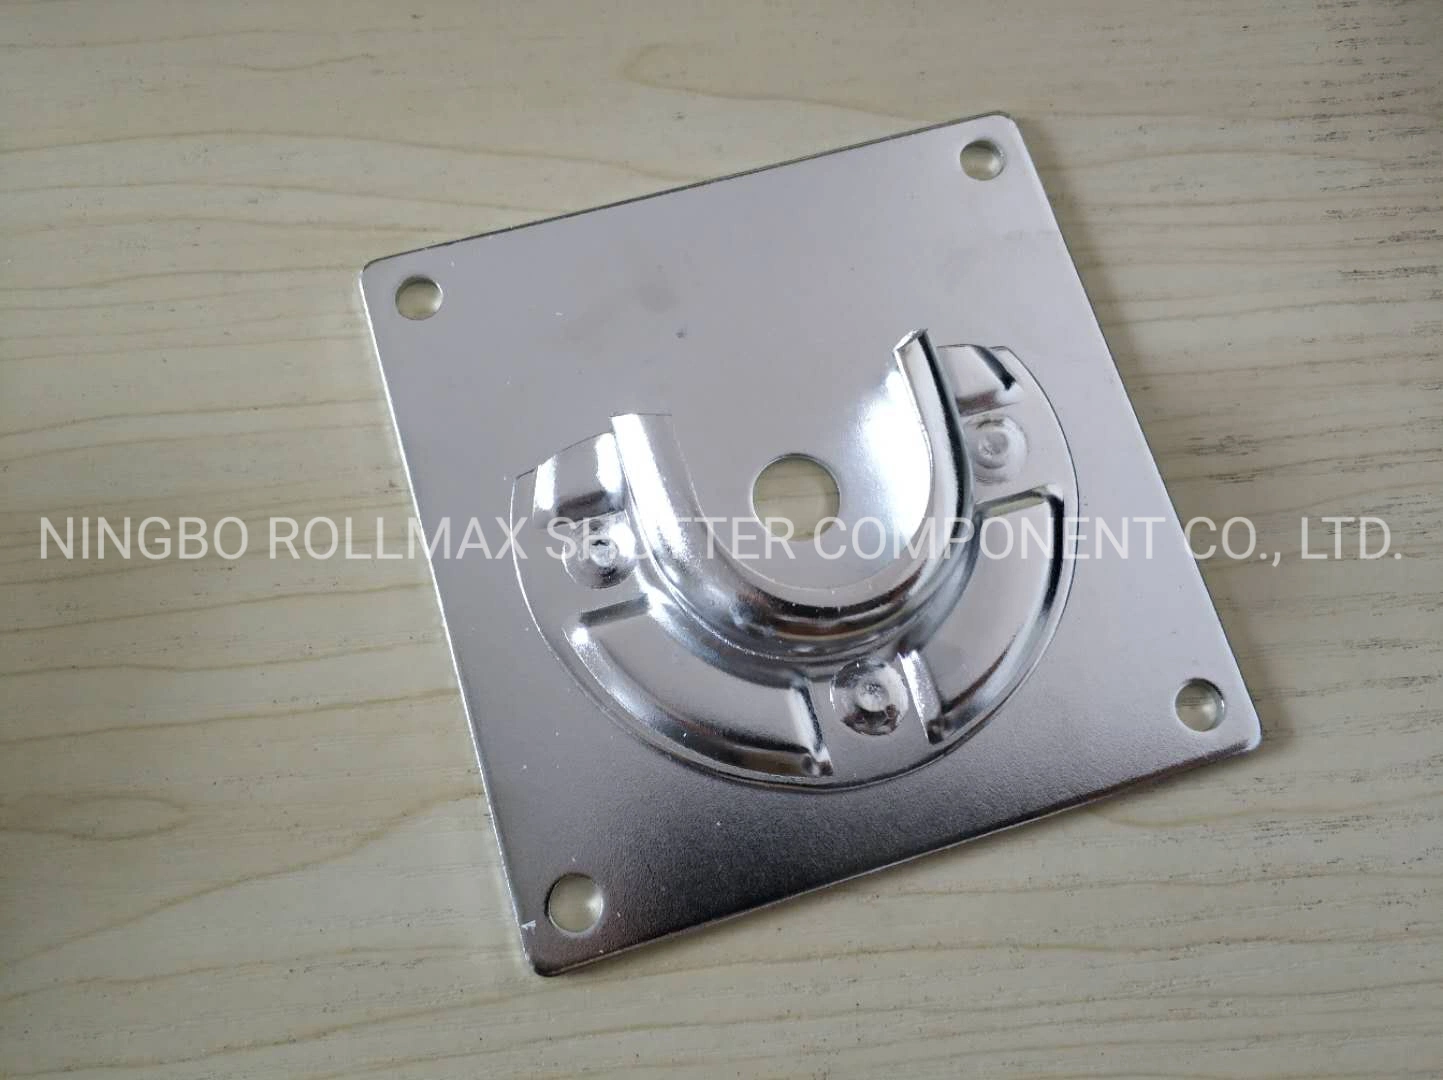 Roller Shutter Part/ Rolling Shutter Door Accessories 42mm Bearing Bracket